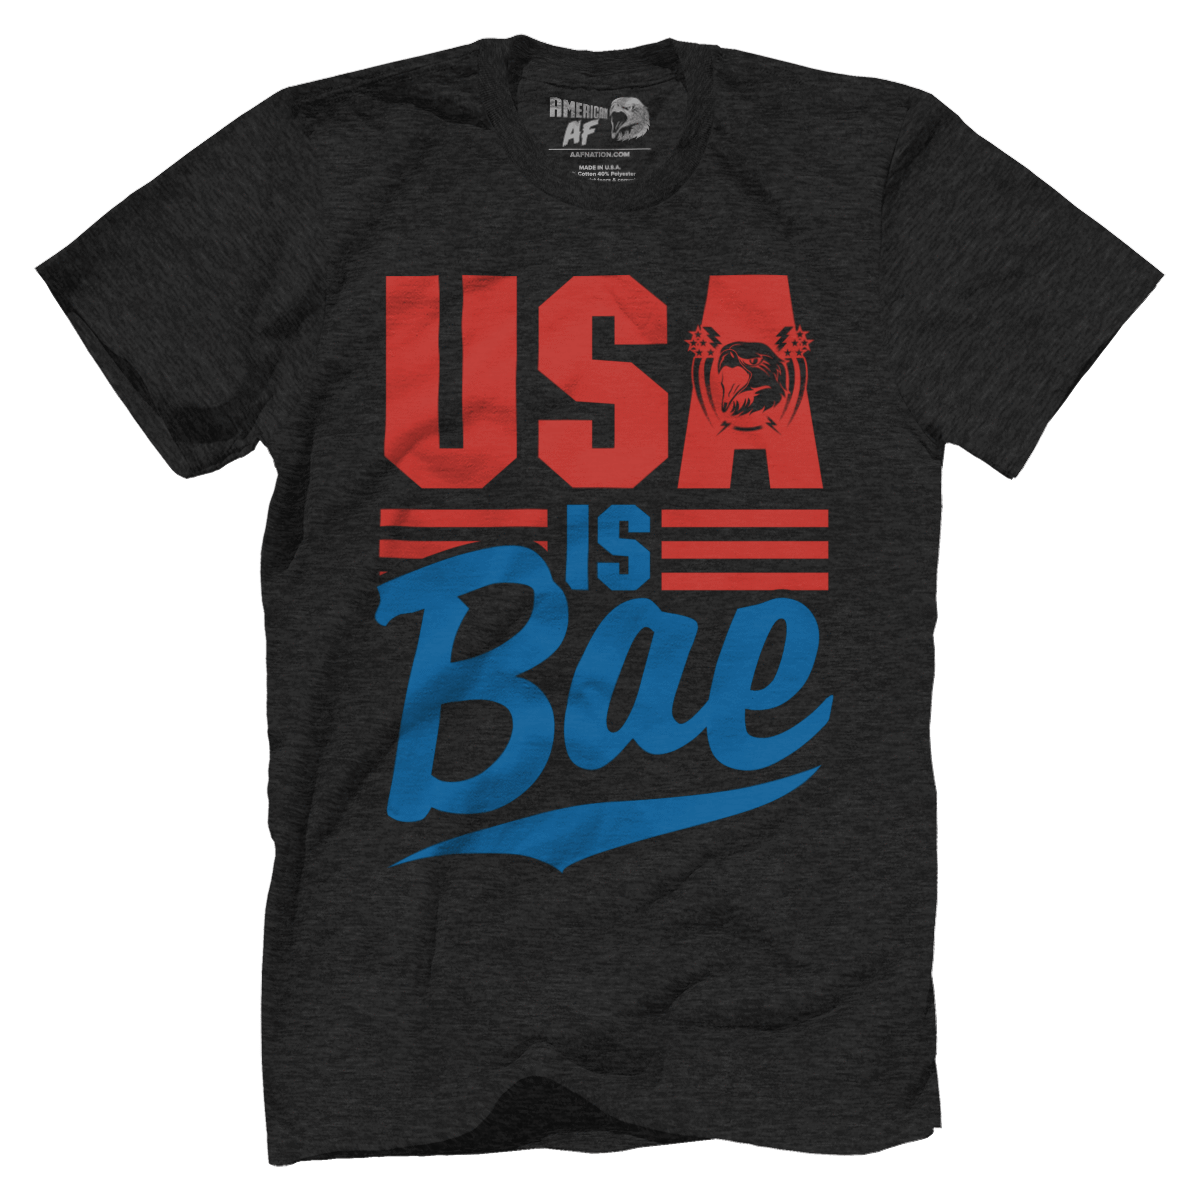 T-shirt Premium Mens Triblend Shirt / Vintage Black / S USA is BAE!